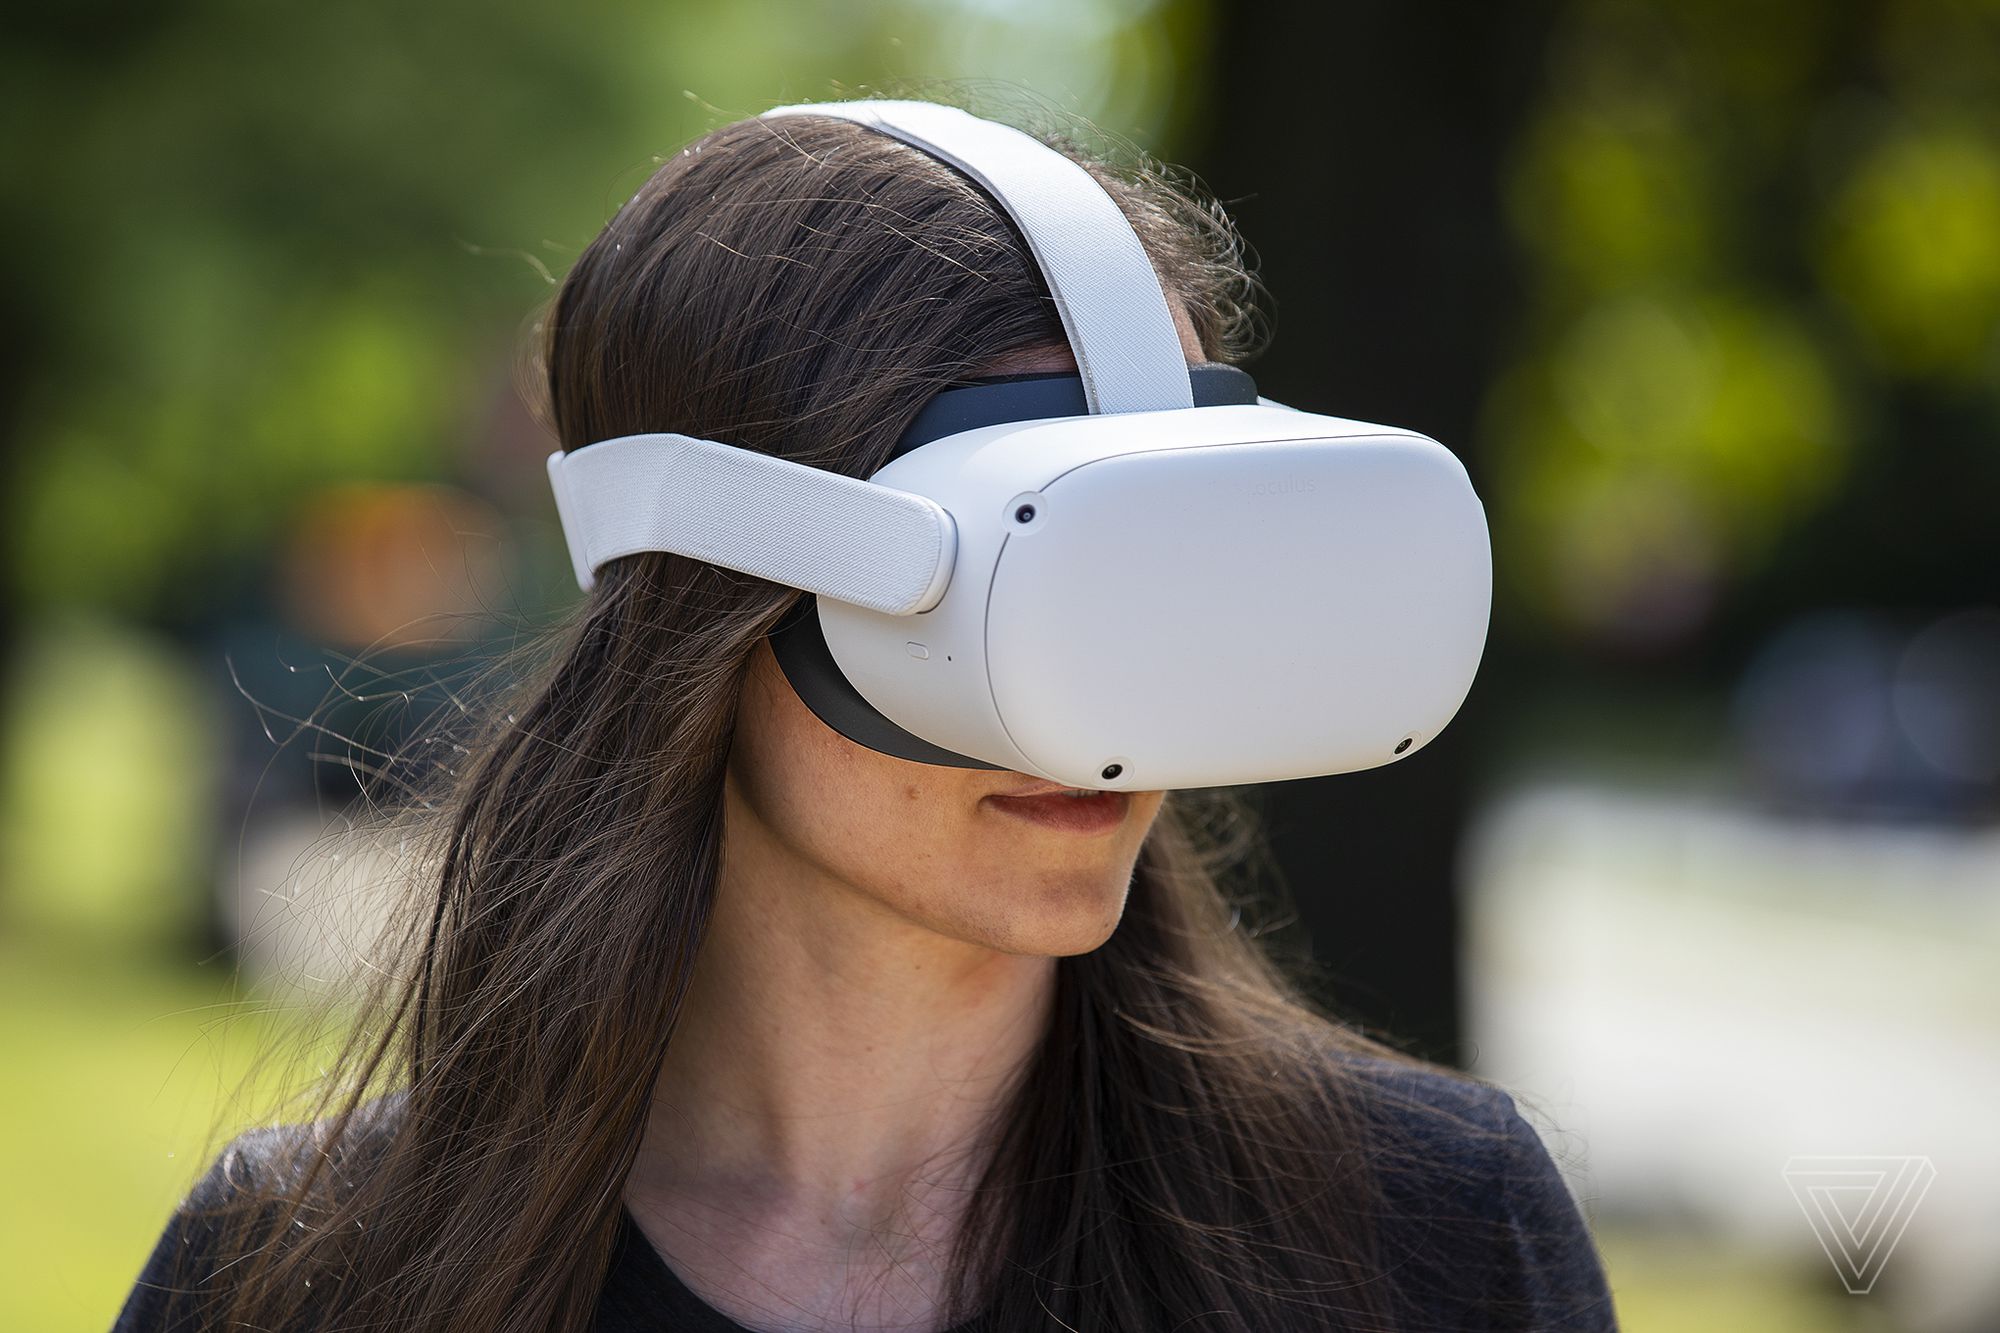 图片展示了一位长发女士戴着一副白色的虚拟现实头盔，看起来正专注于体验虚拟现实内容。头盔覆盖了她的眼睛。